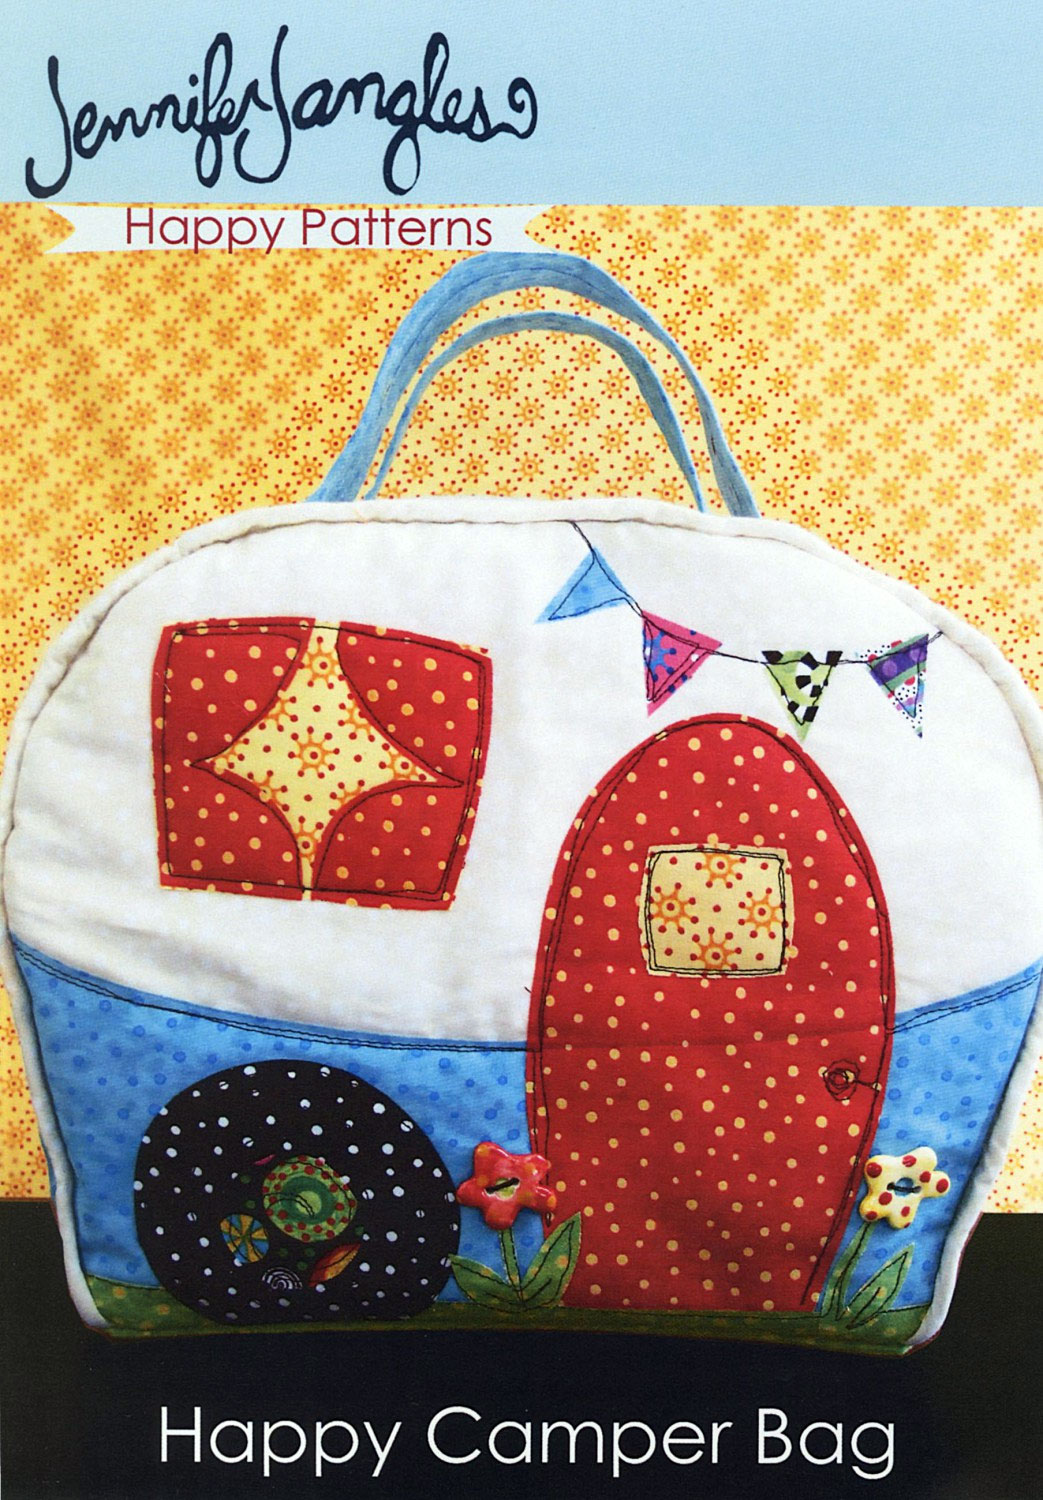 Happy-Camper-Bag-sewing-pattern-Jennifer-Jangles-front